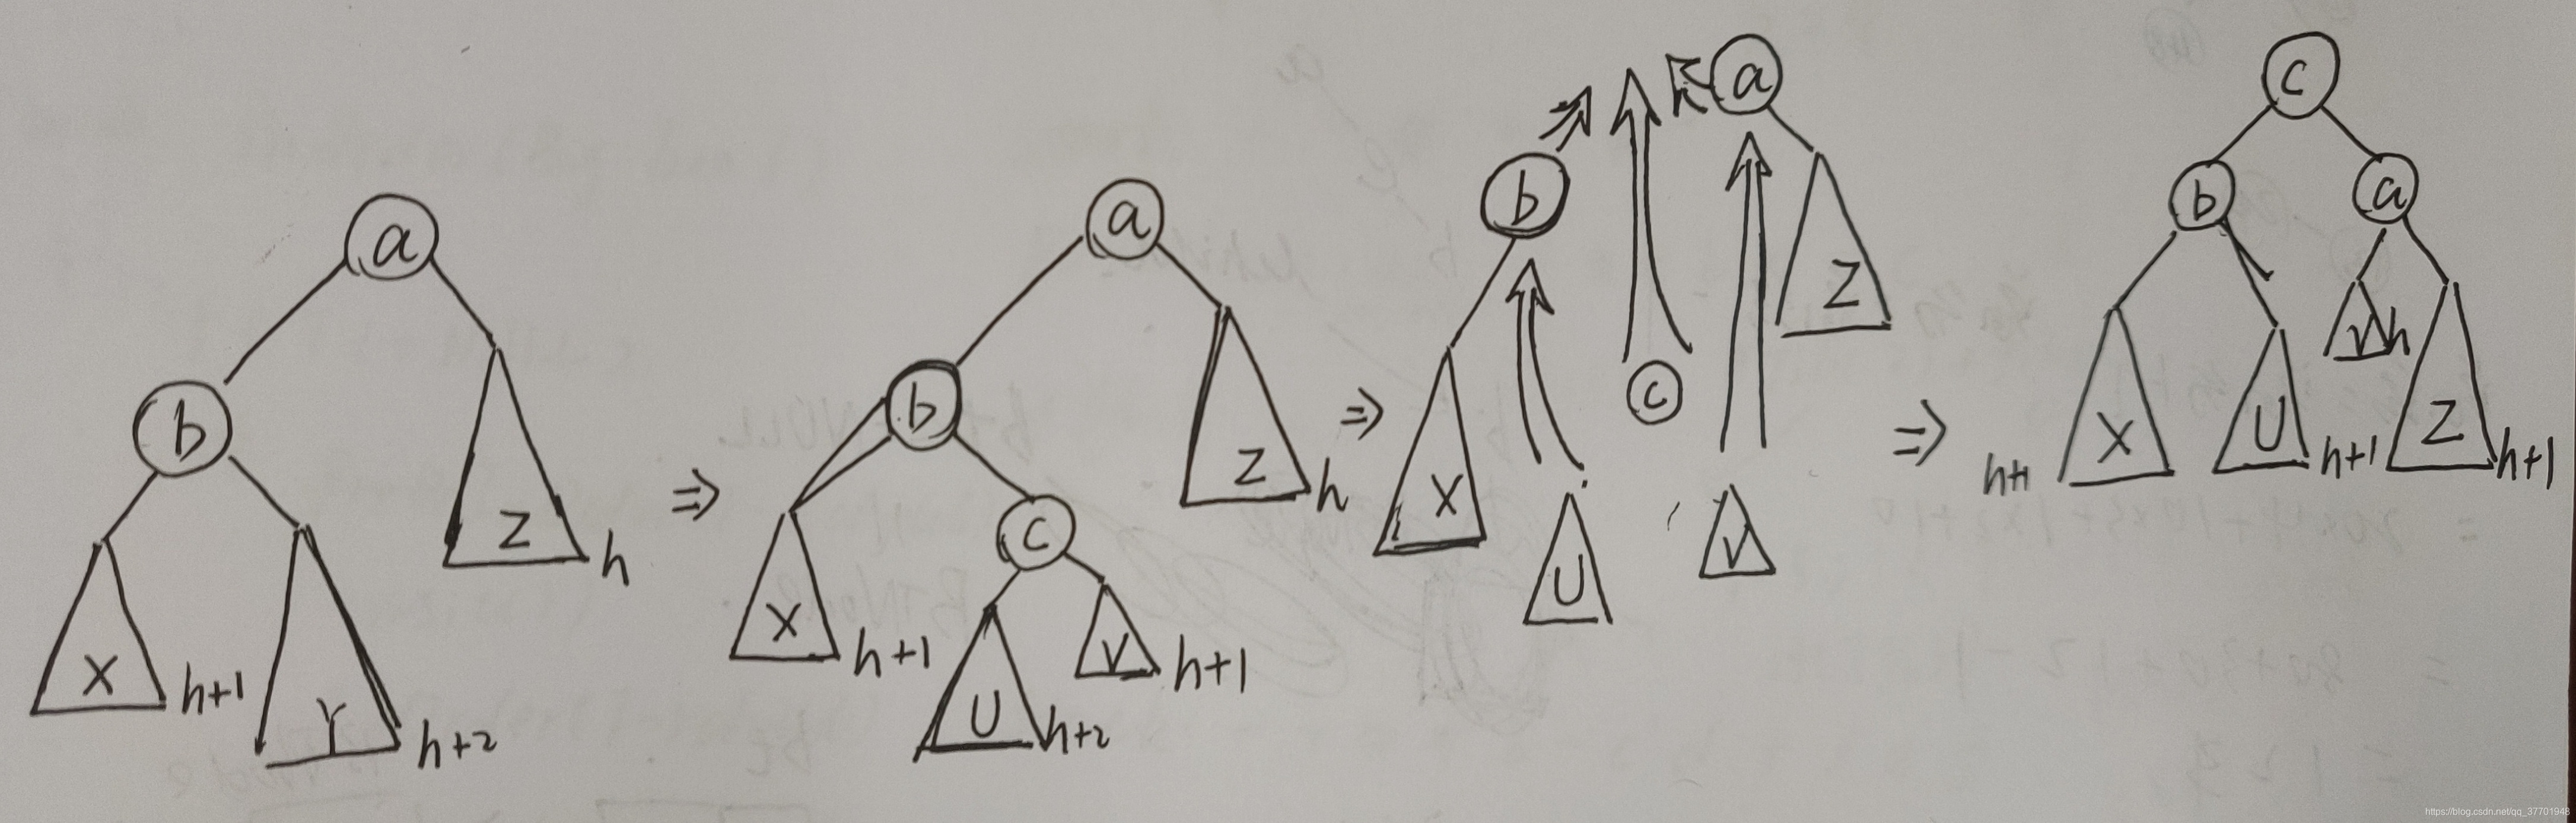 二叉排序树和平衡二叉树